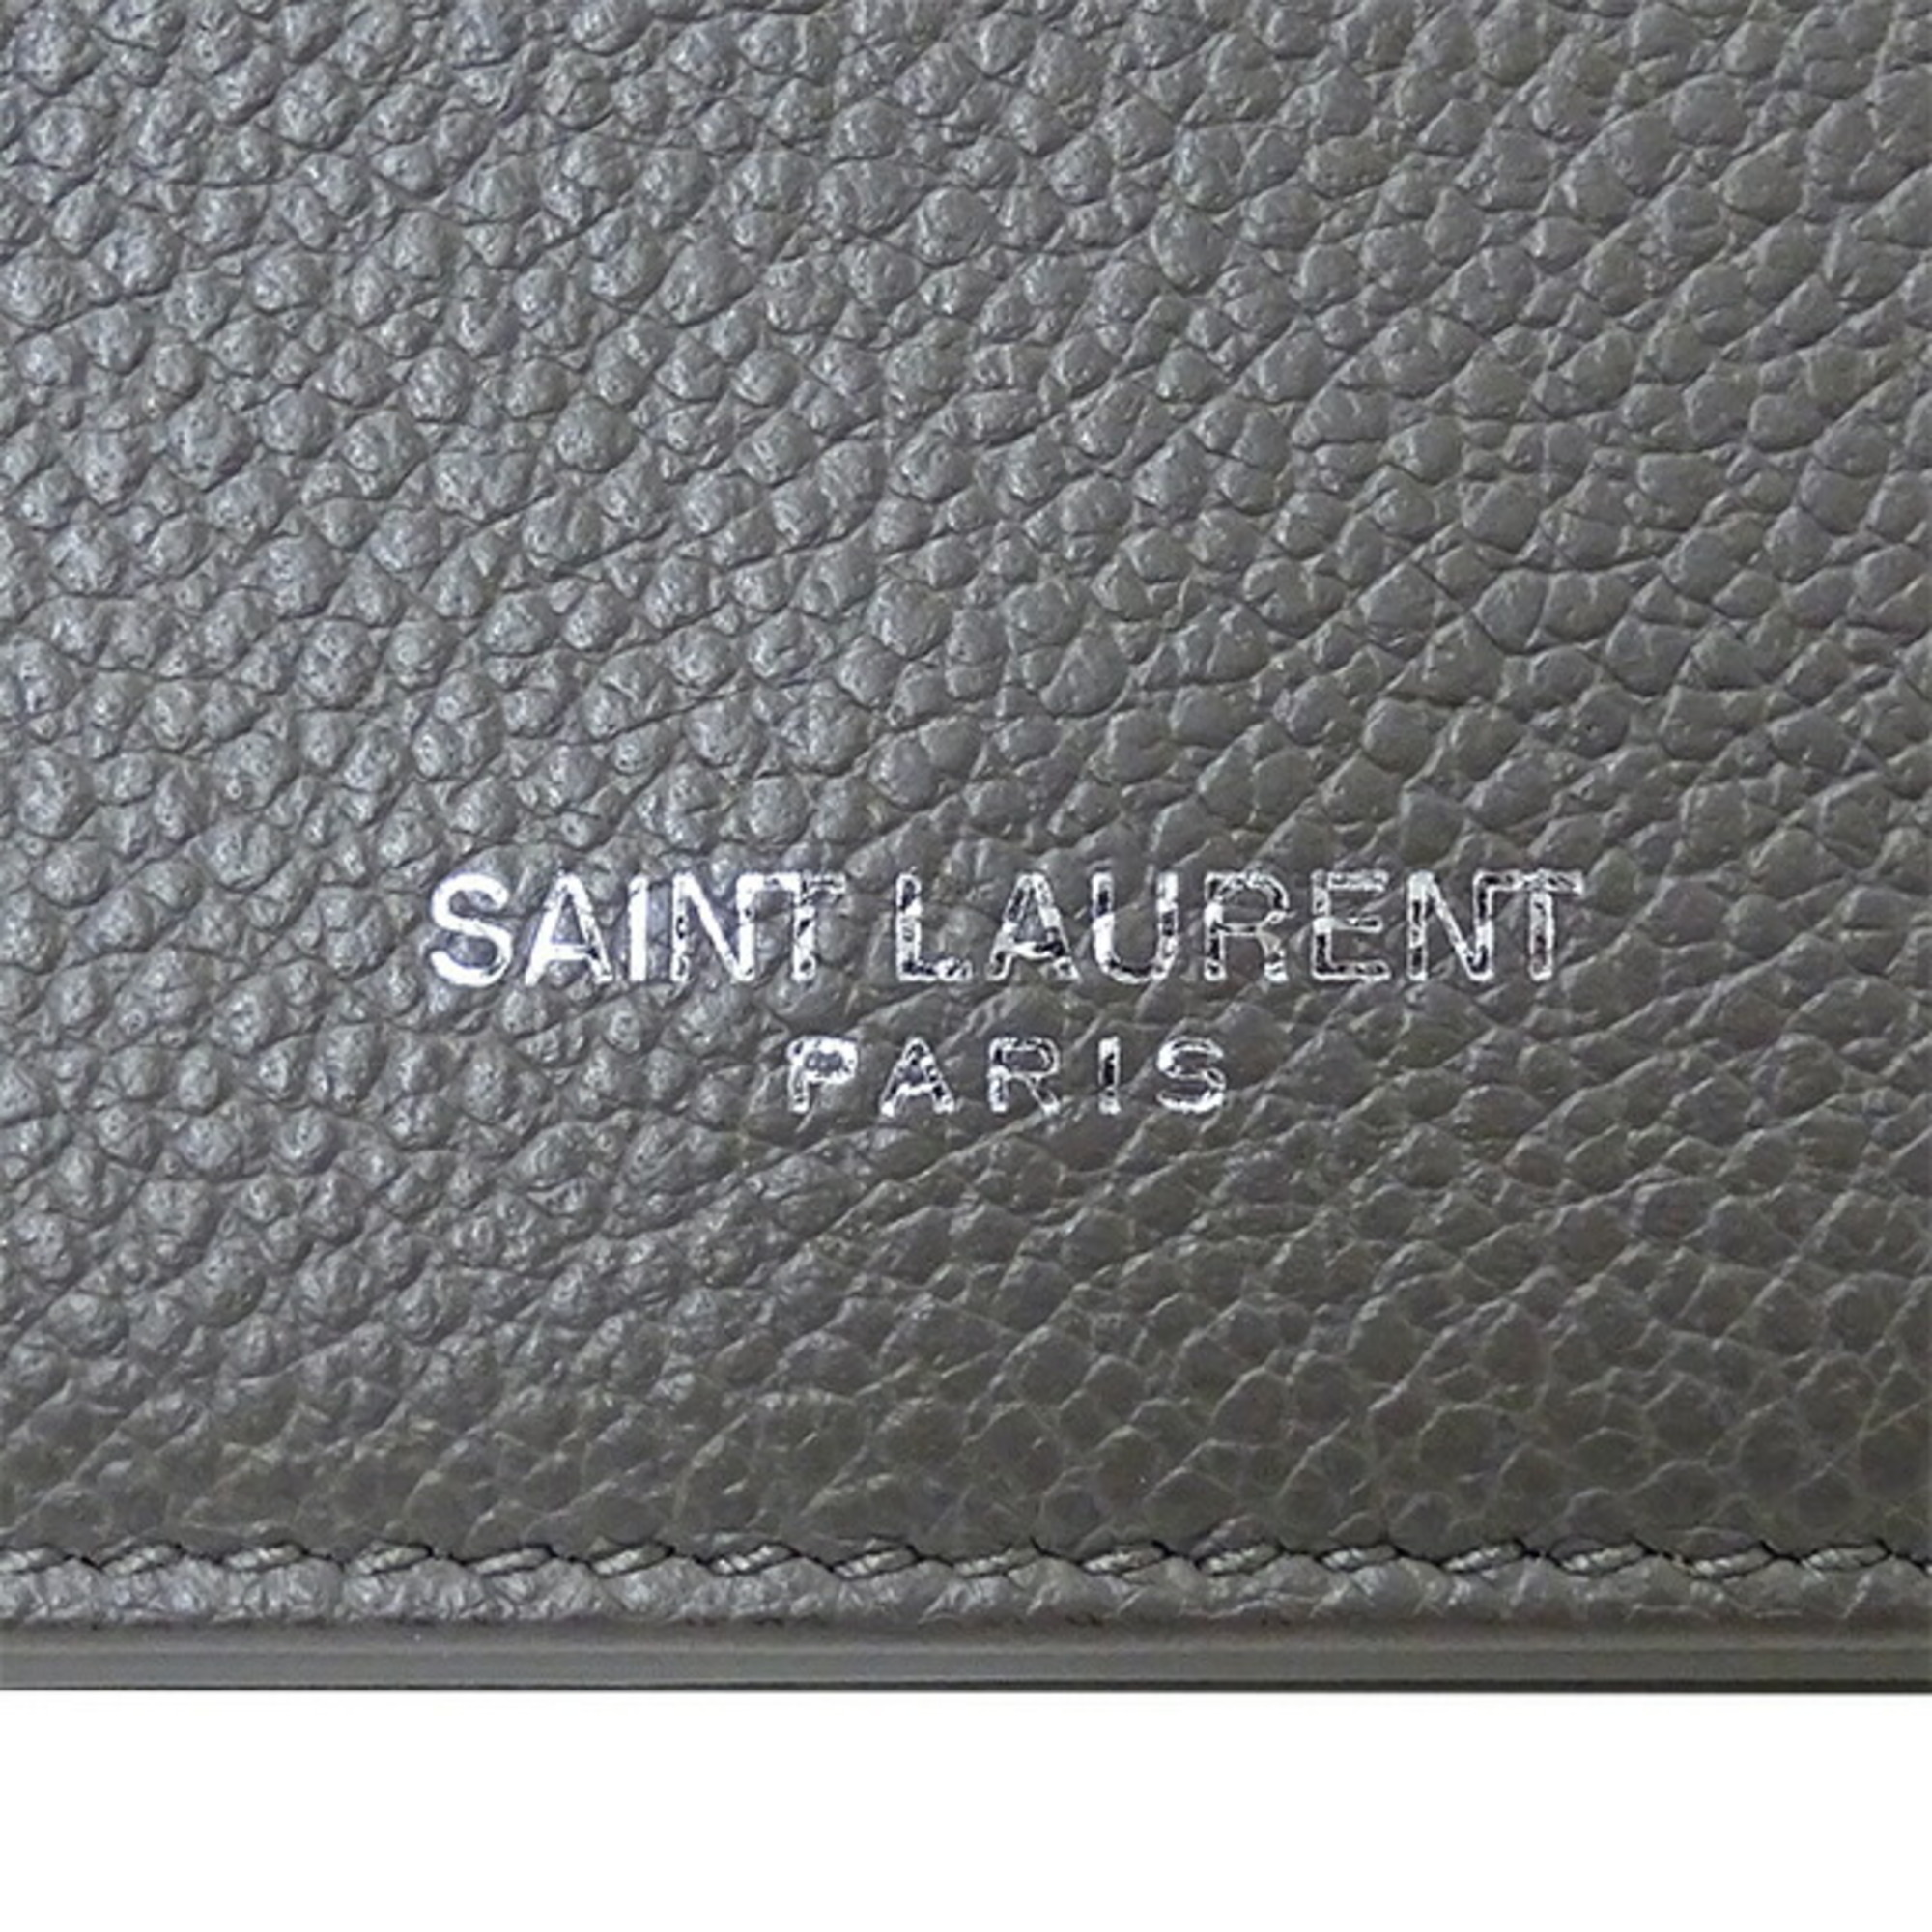 Saint Laurent SAINT LAURENT Wallet Women's Trifold Leather Gray Coin Purse Bill